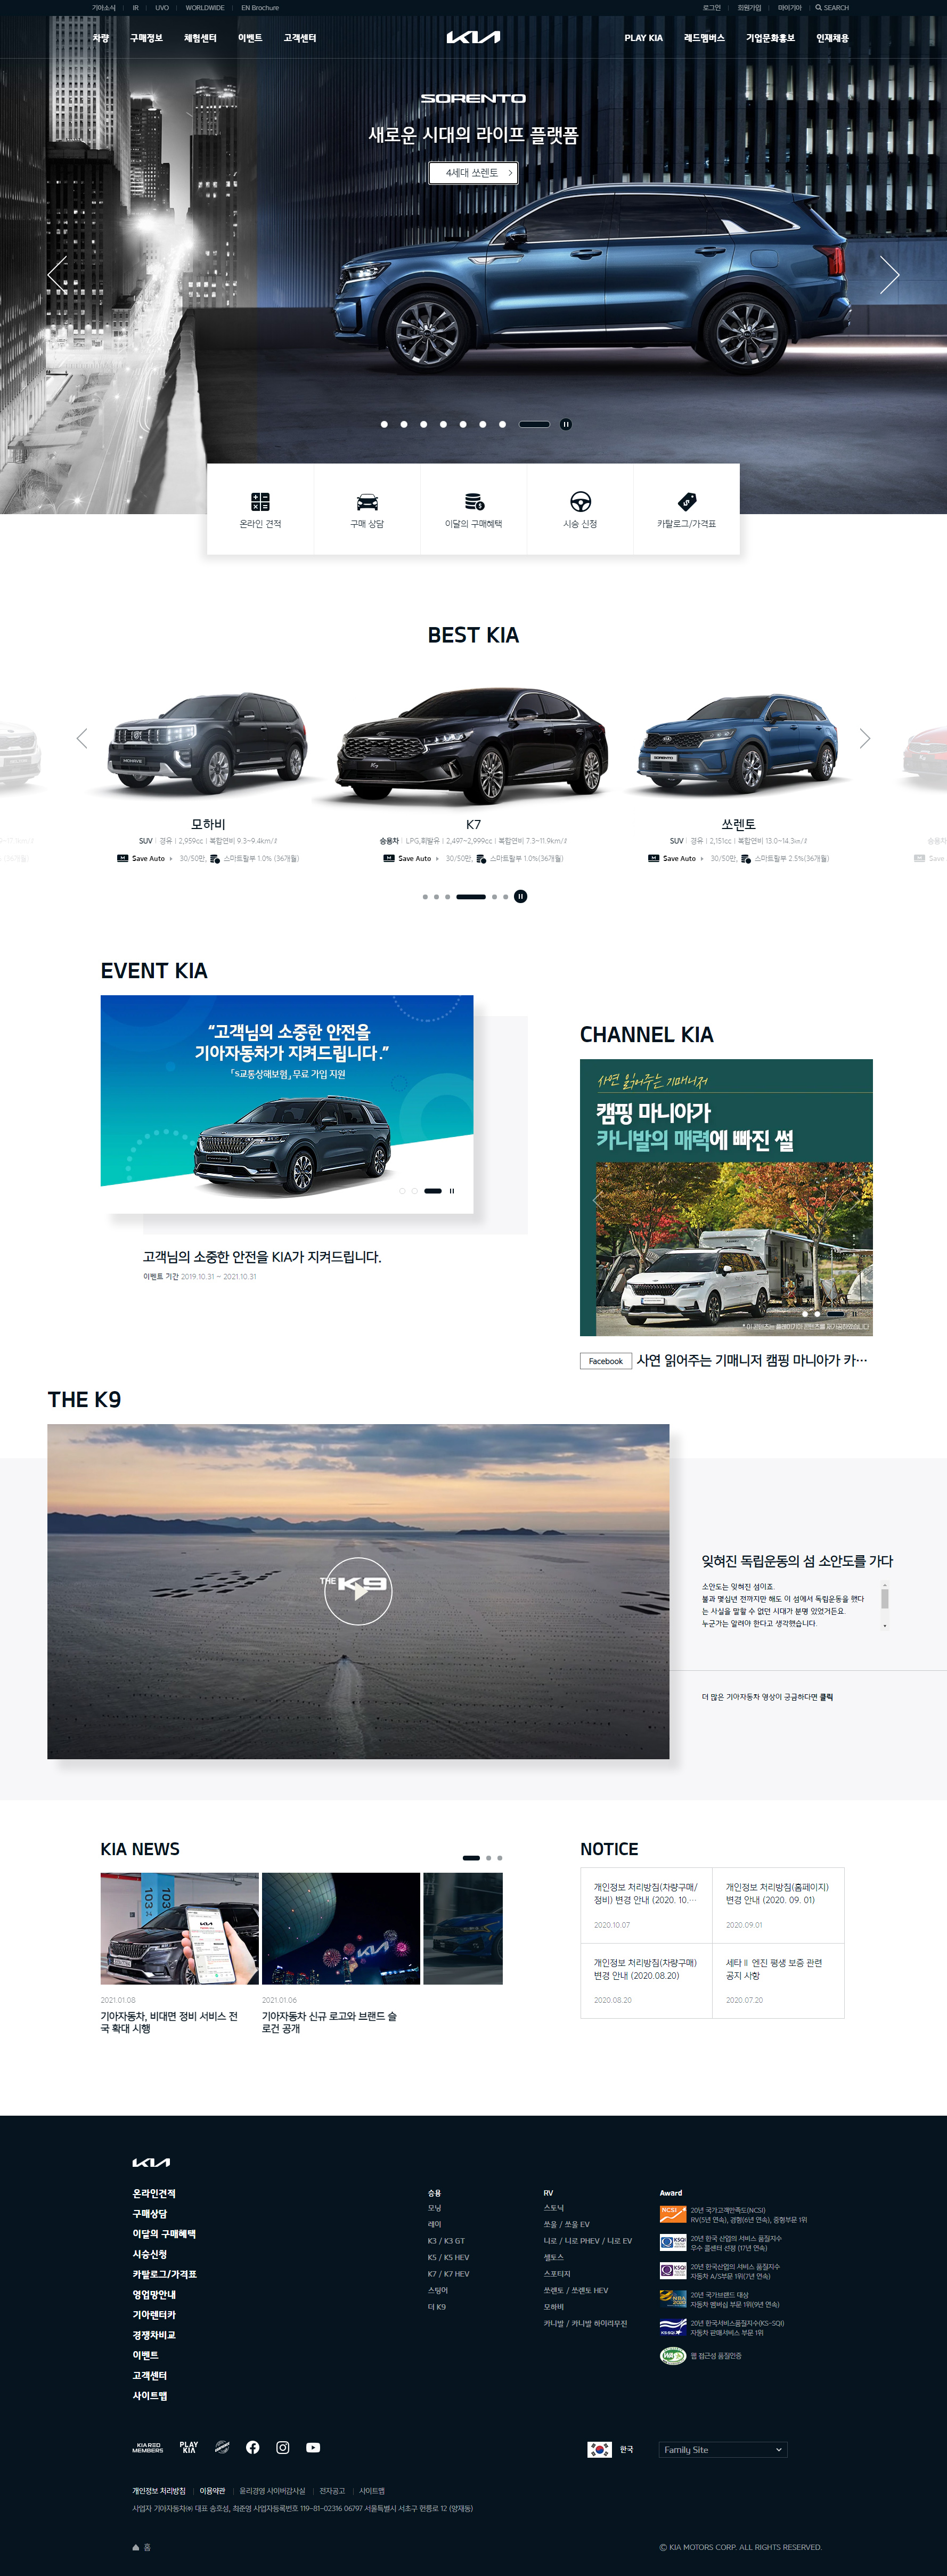 韩国起亚汽车(韩语)网站设计